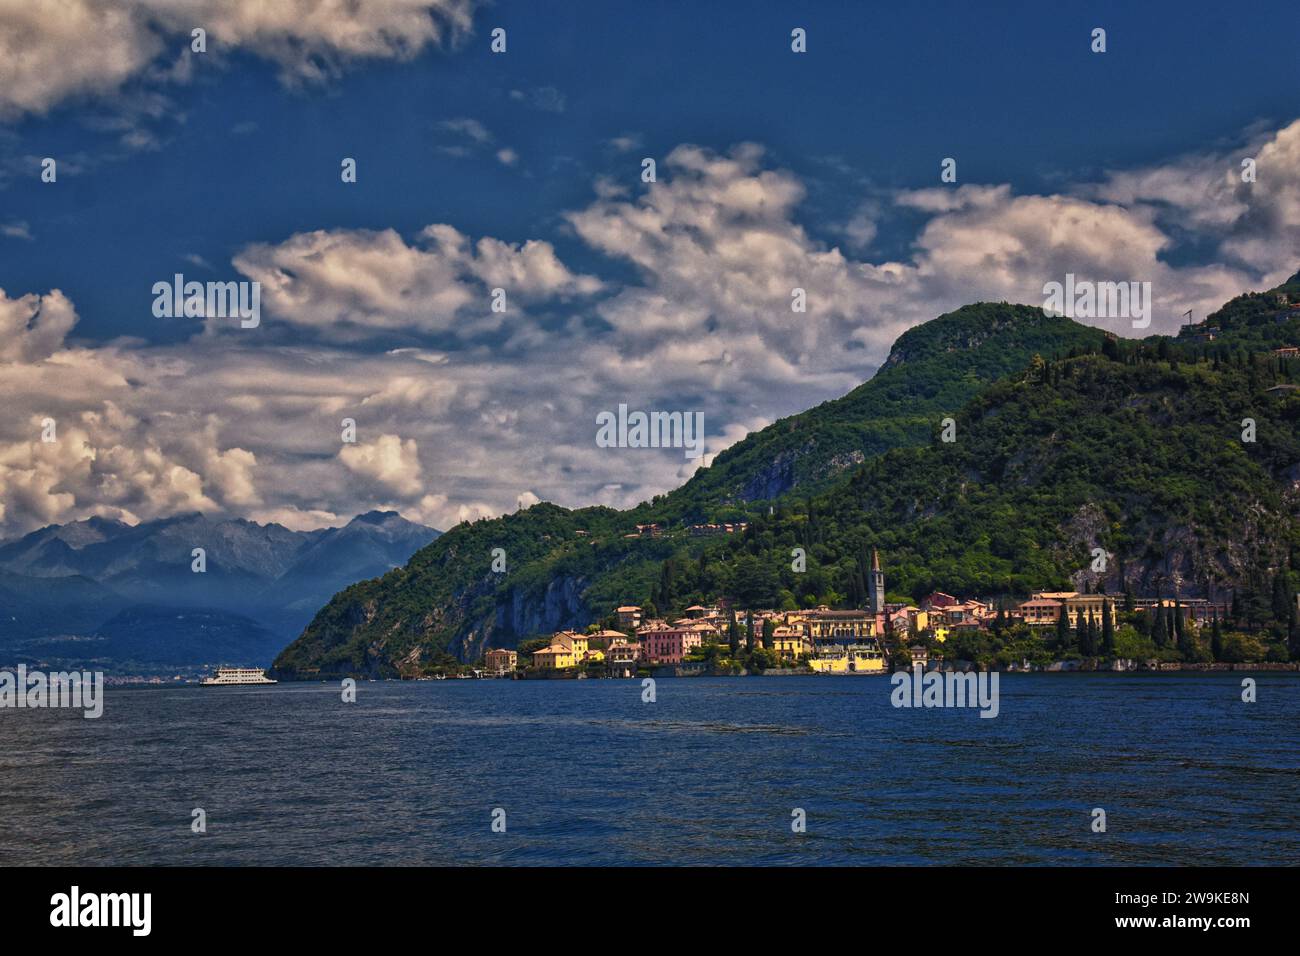 Vista de la ciudad del lago de Como desde un barco en la región de Lombardía del norte de Italia en las estribaciones de los Alpes, Europa. Foto de stock